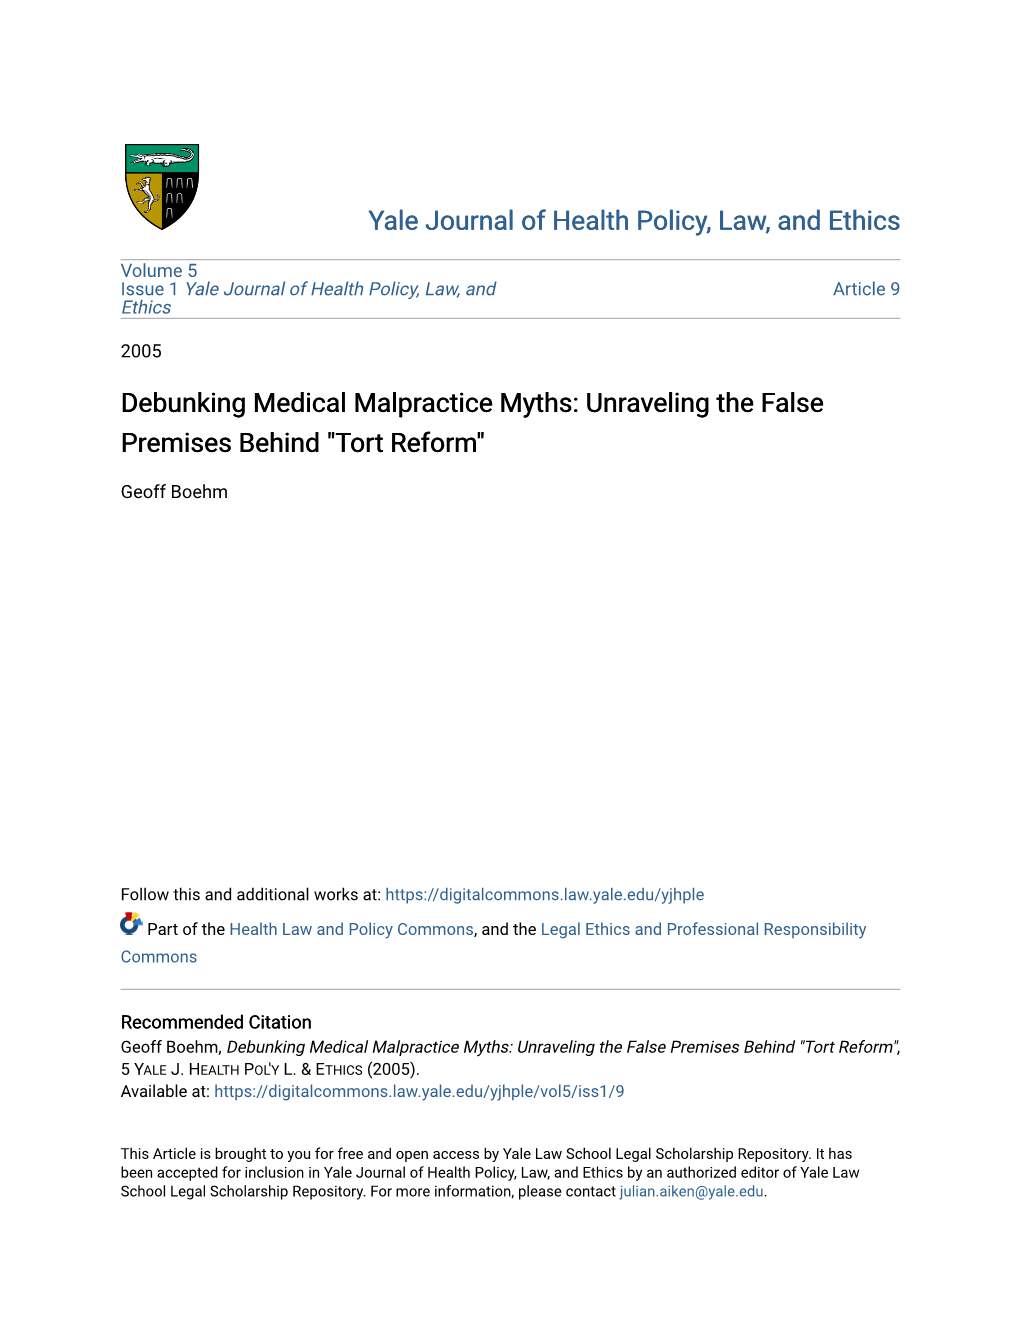 Debunking Medical Malpractice Myths: Unraveling the False Premises Behind "Tort Reform"